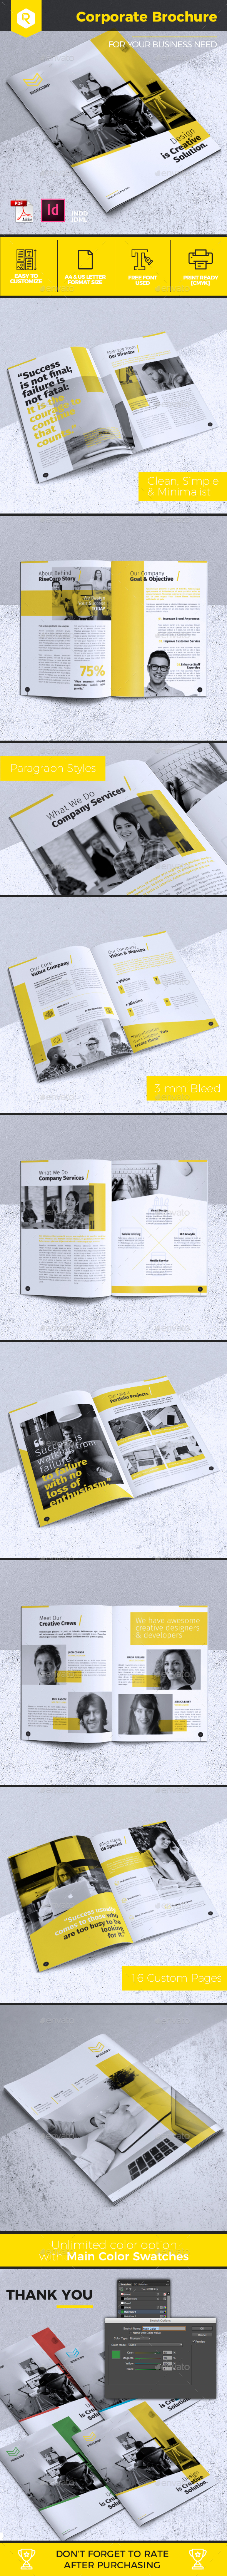 创意简约企业宣传册模板 Creative Corporate Brochure VOL. 24插图